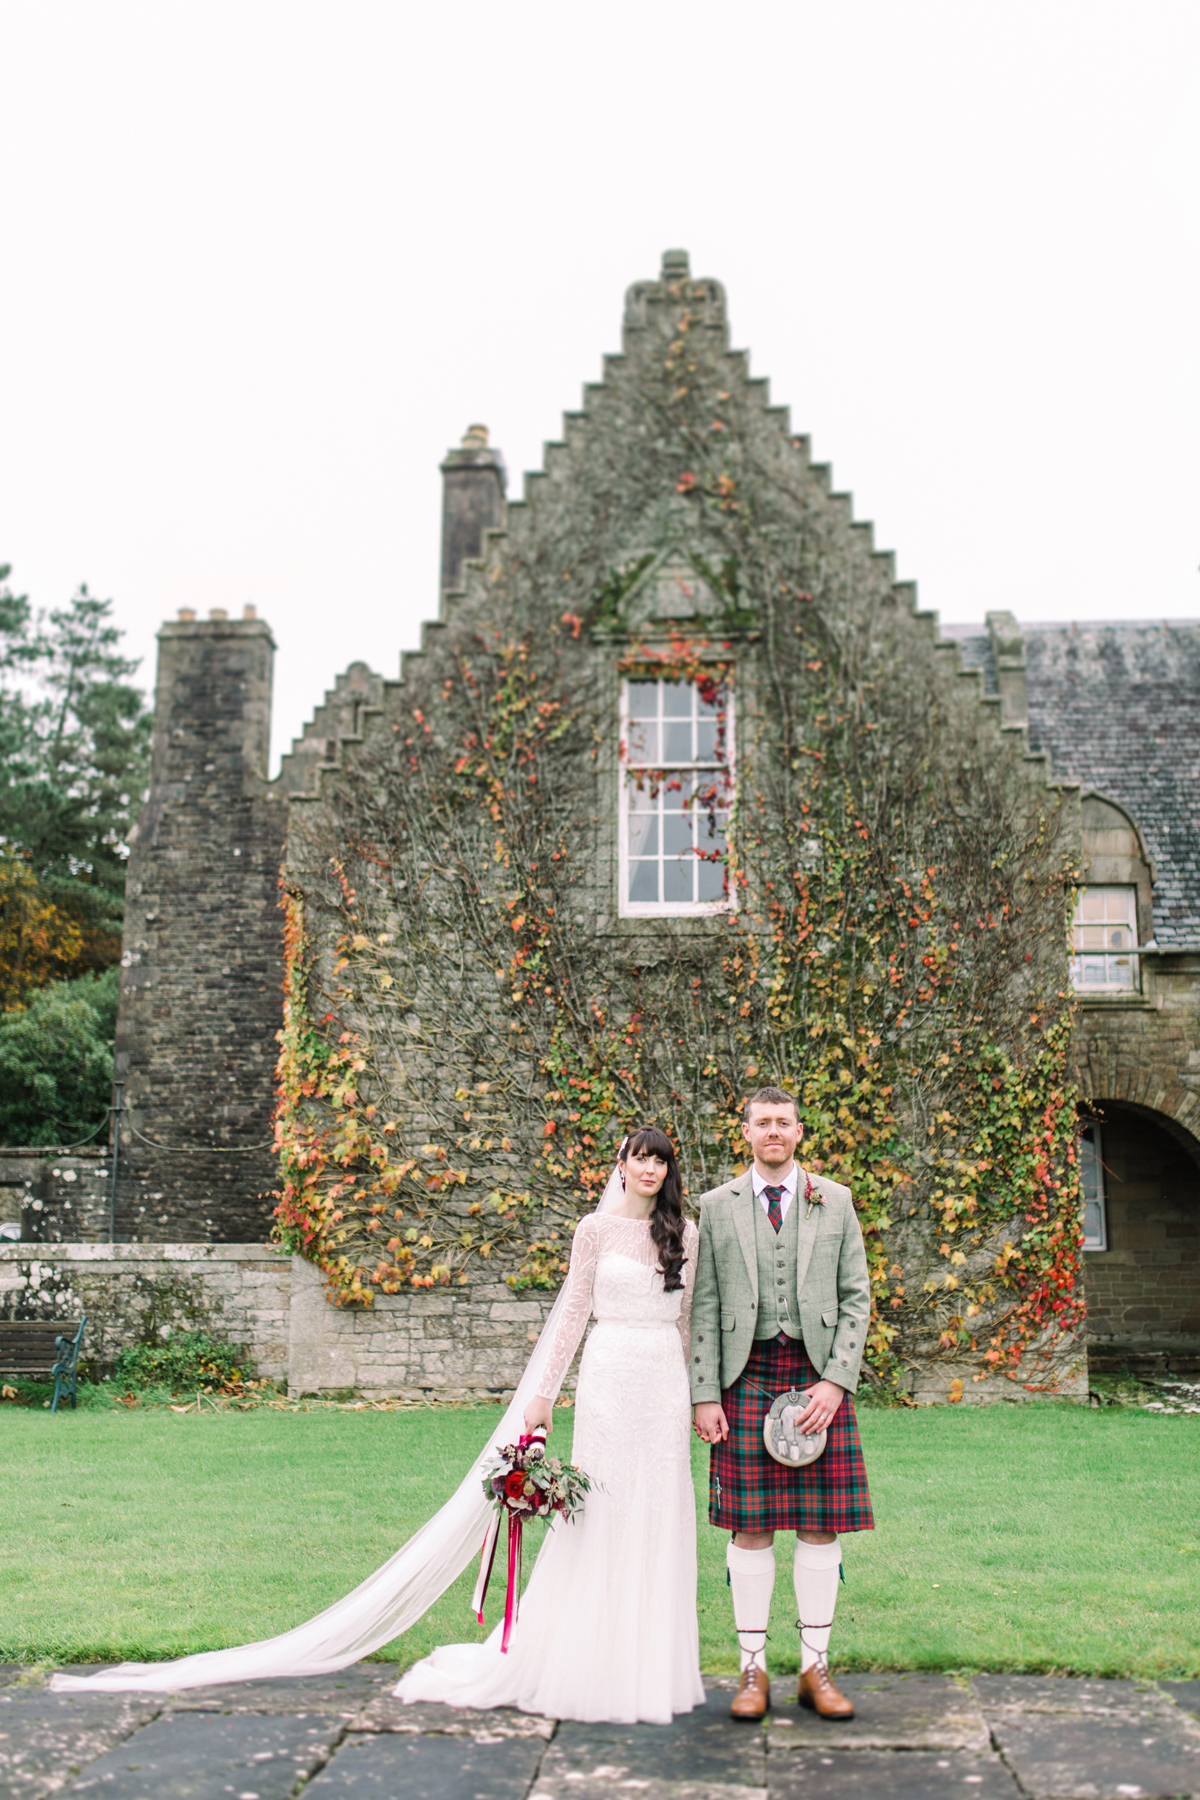 28 Ivy covered walls at Rowallan Castle wedding venue in Scotland